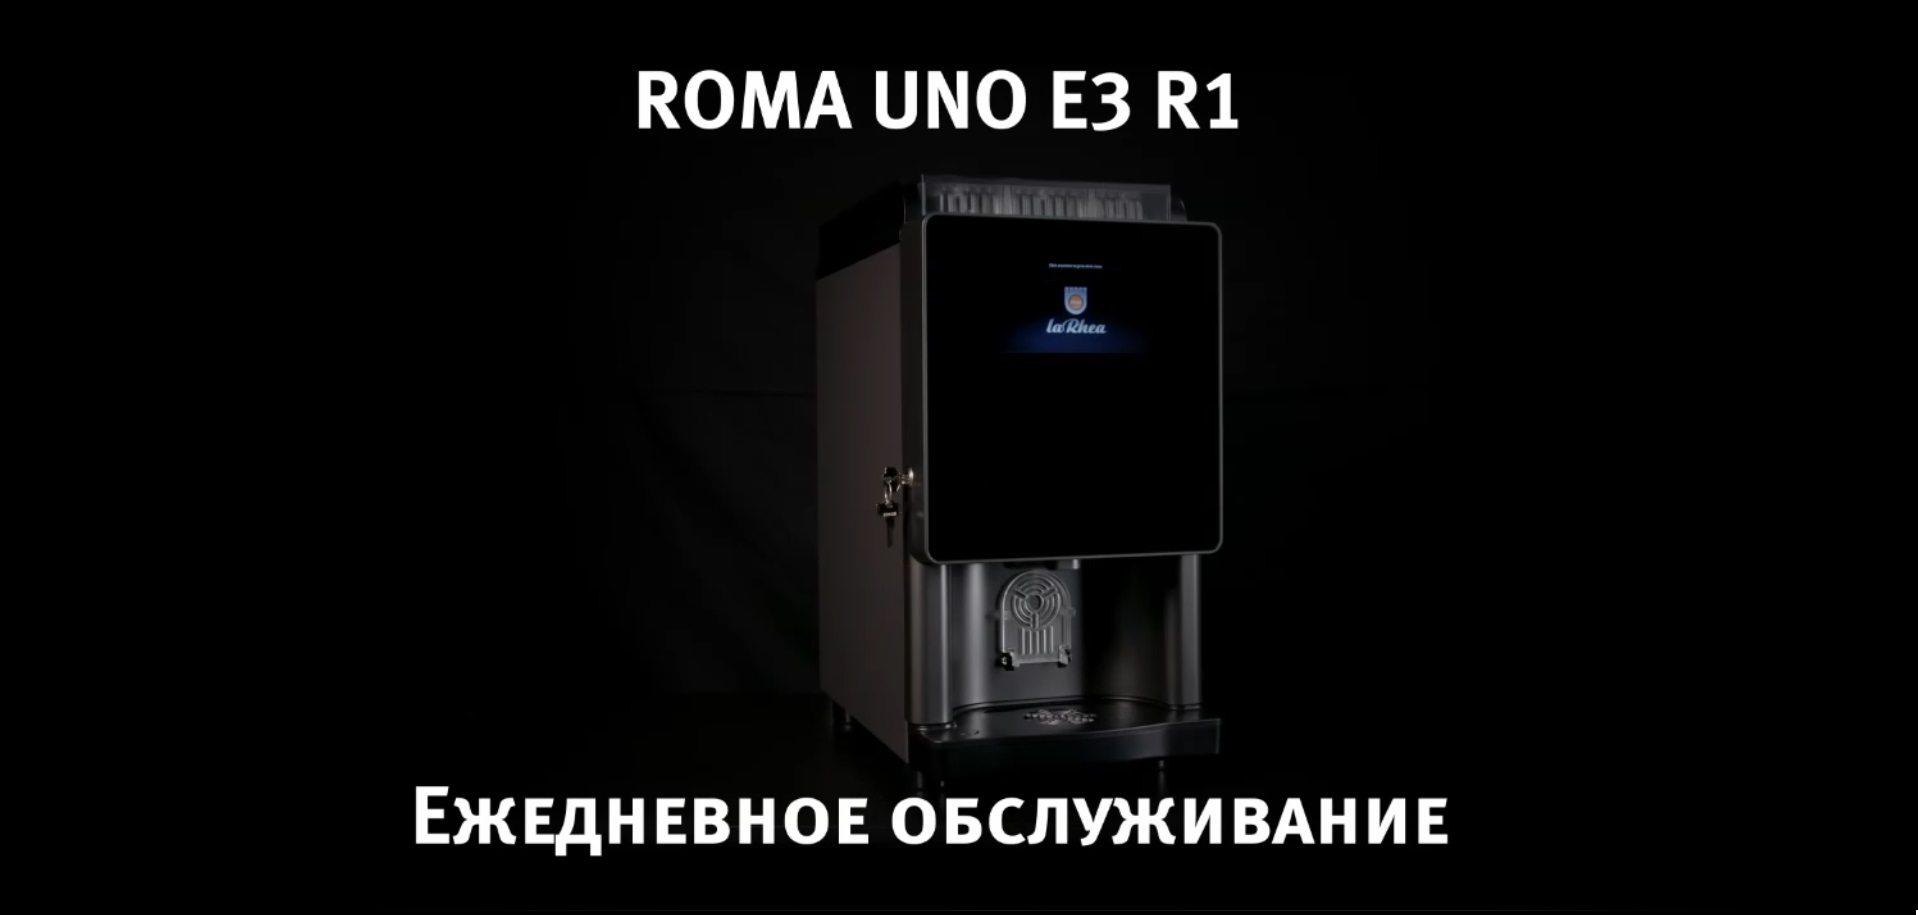 Ежедневное обслуживание кофемашины Roma Uno